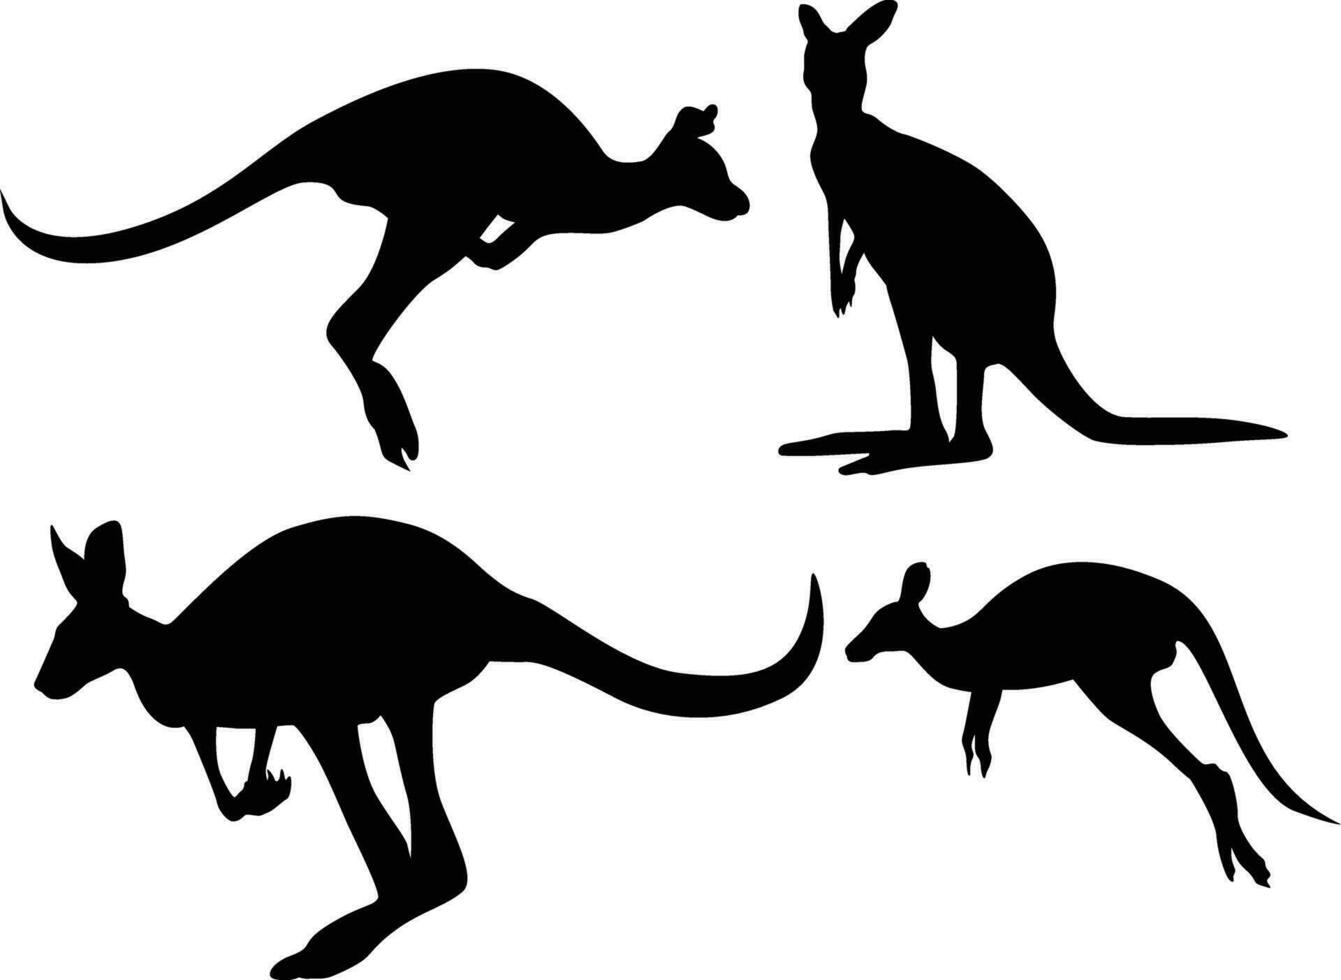 Australië dag. nationaal patriottisch vakantie in Australië. kangoeroe herkenbaar dier in land. vector